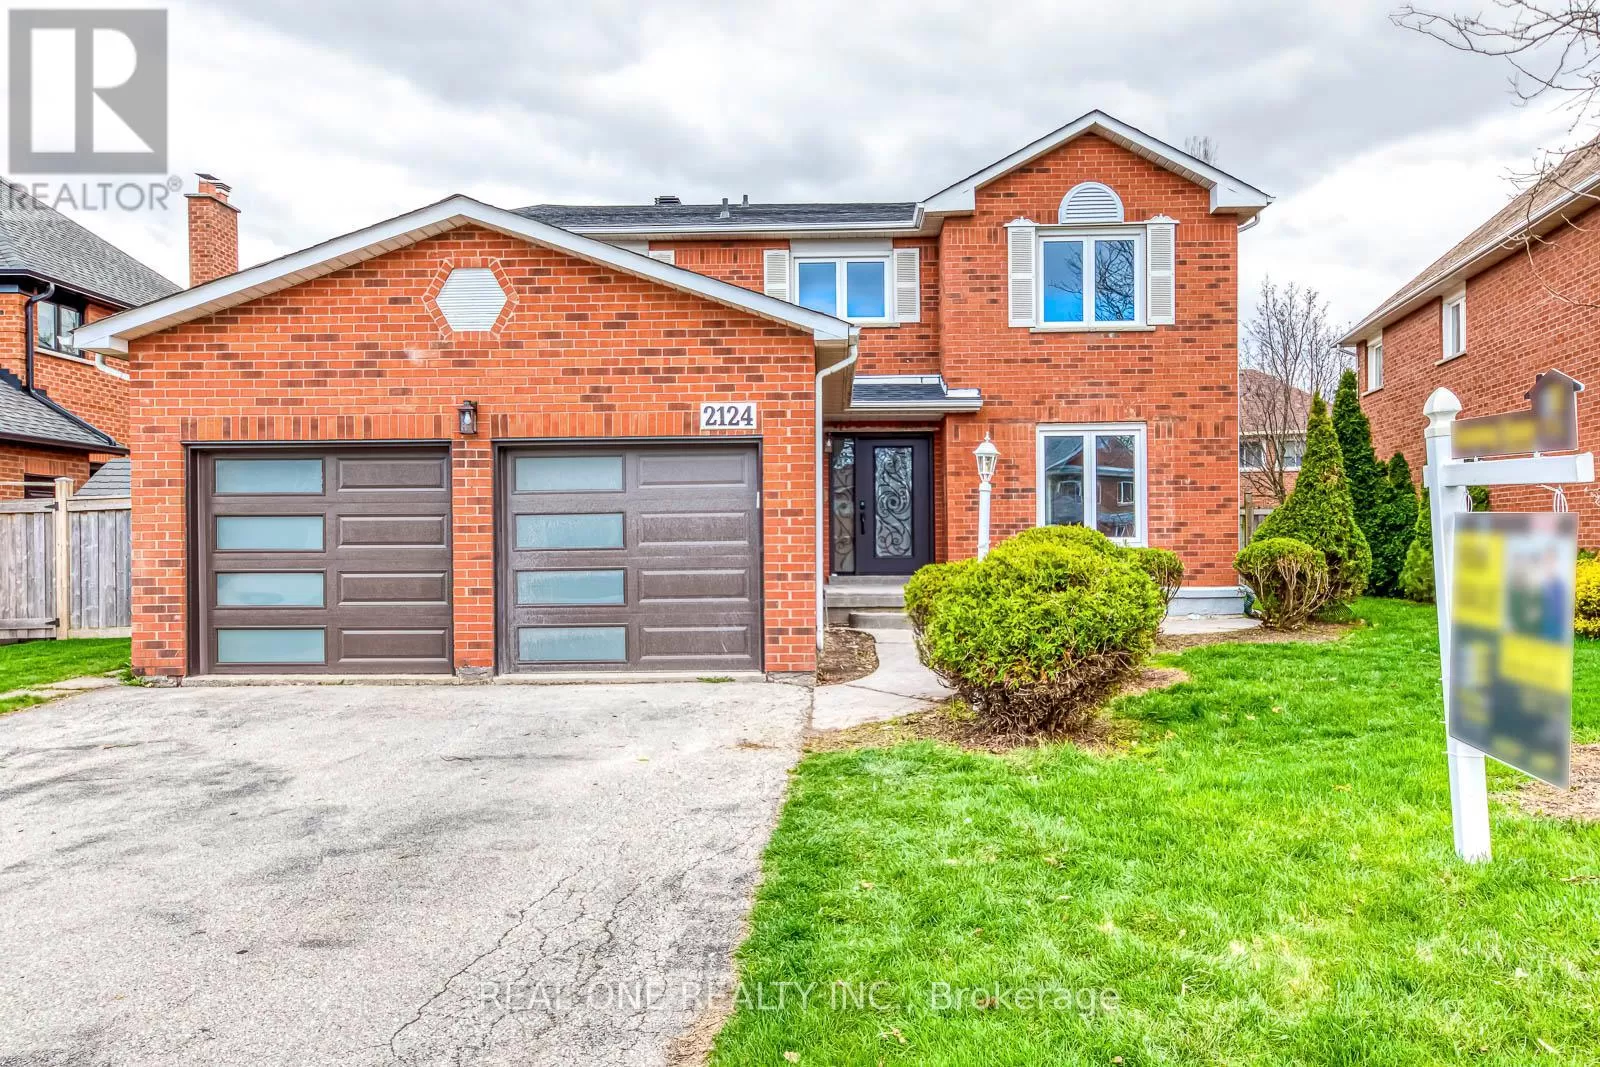 House for rent: 2124 Grand Blvd, Oakville, Ontario L6H 5M3